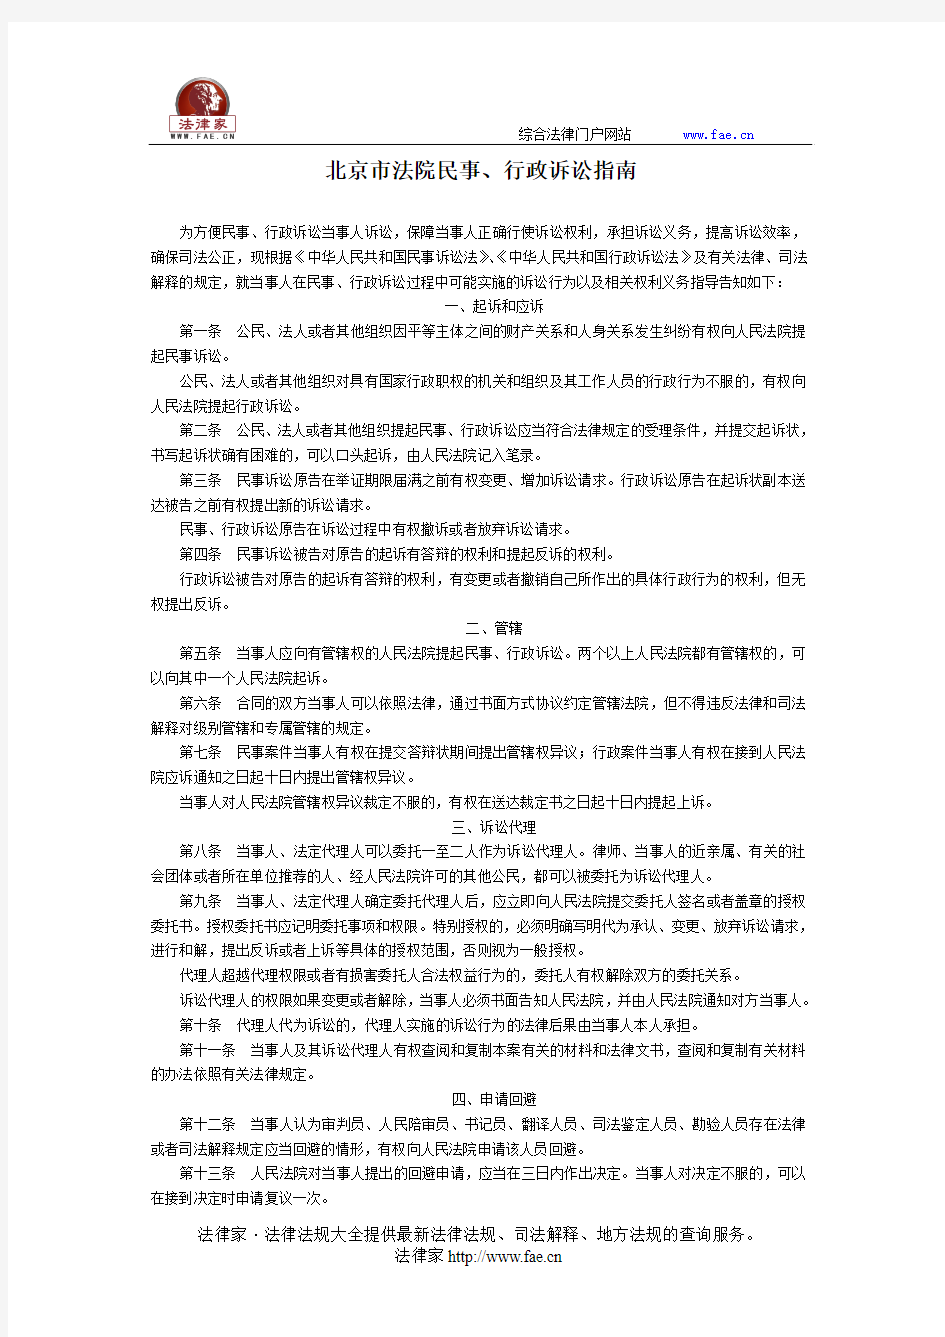 北京市法院民事、行政诉讼指南-地方司法规范